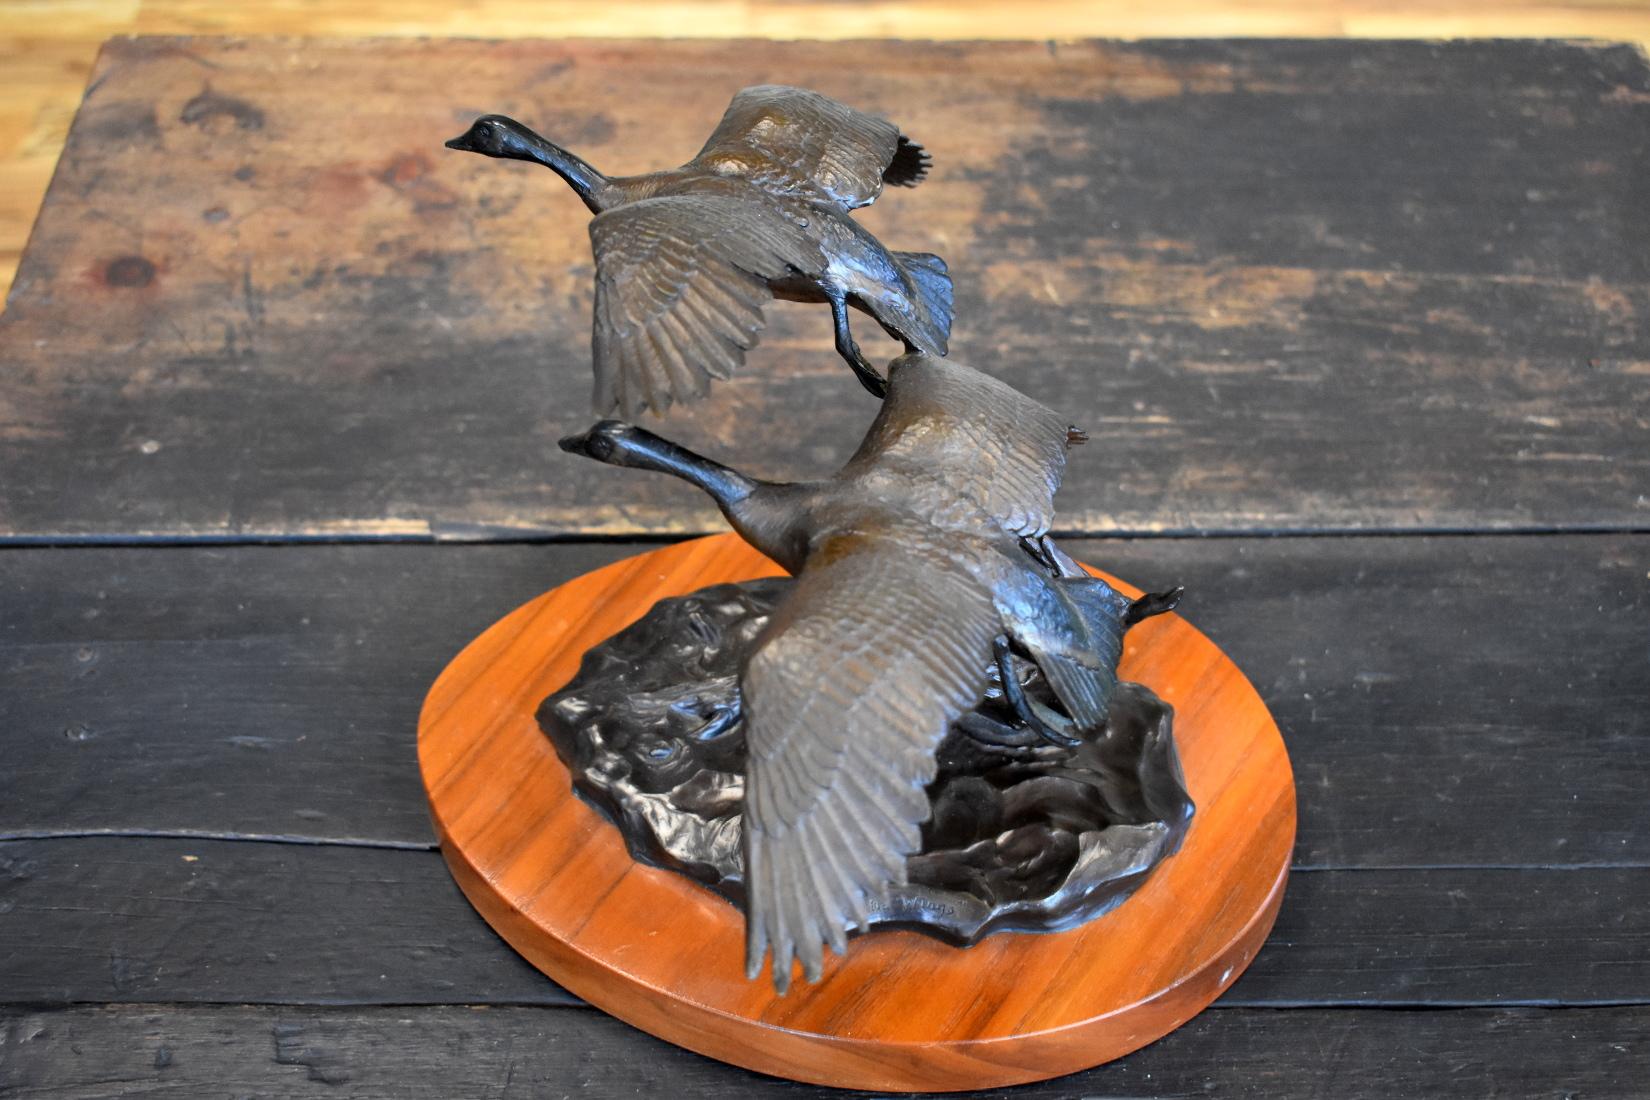 Clark Bronson Figurative Sculpture - "Wild Wings"  Utah Wild Life Artist Bronze Geese in Flight